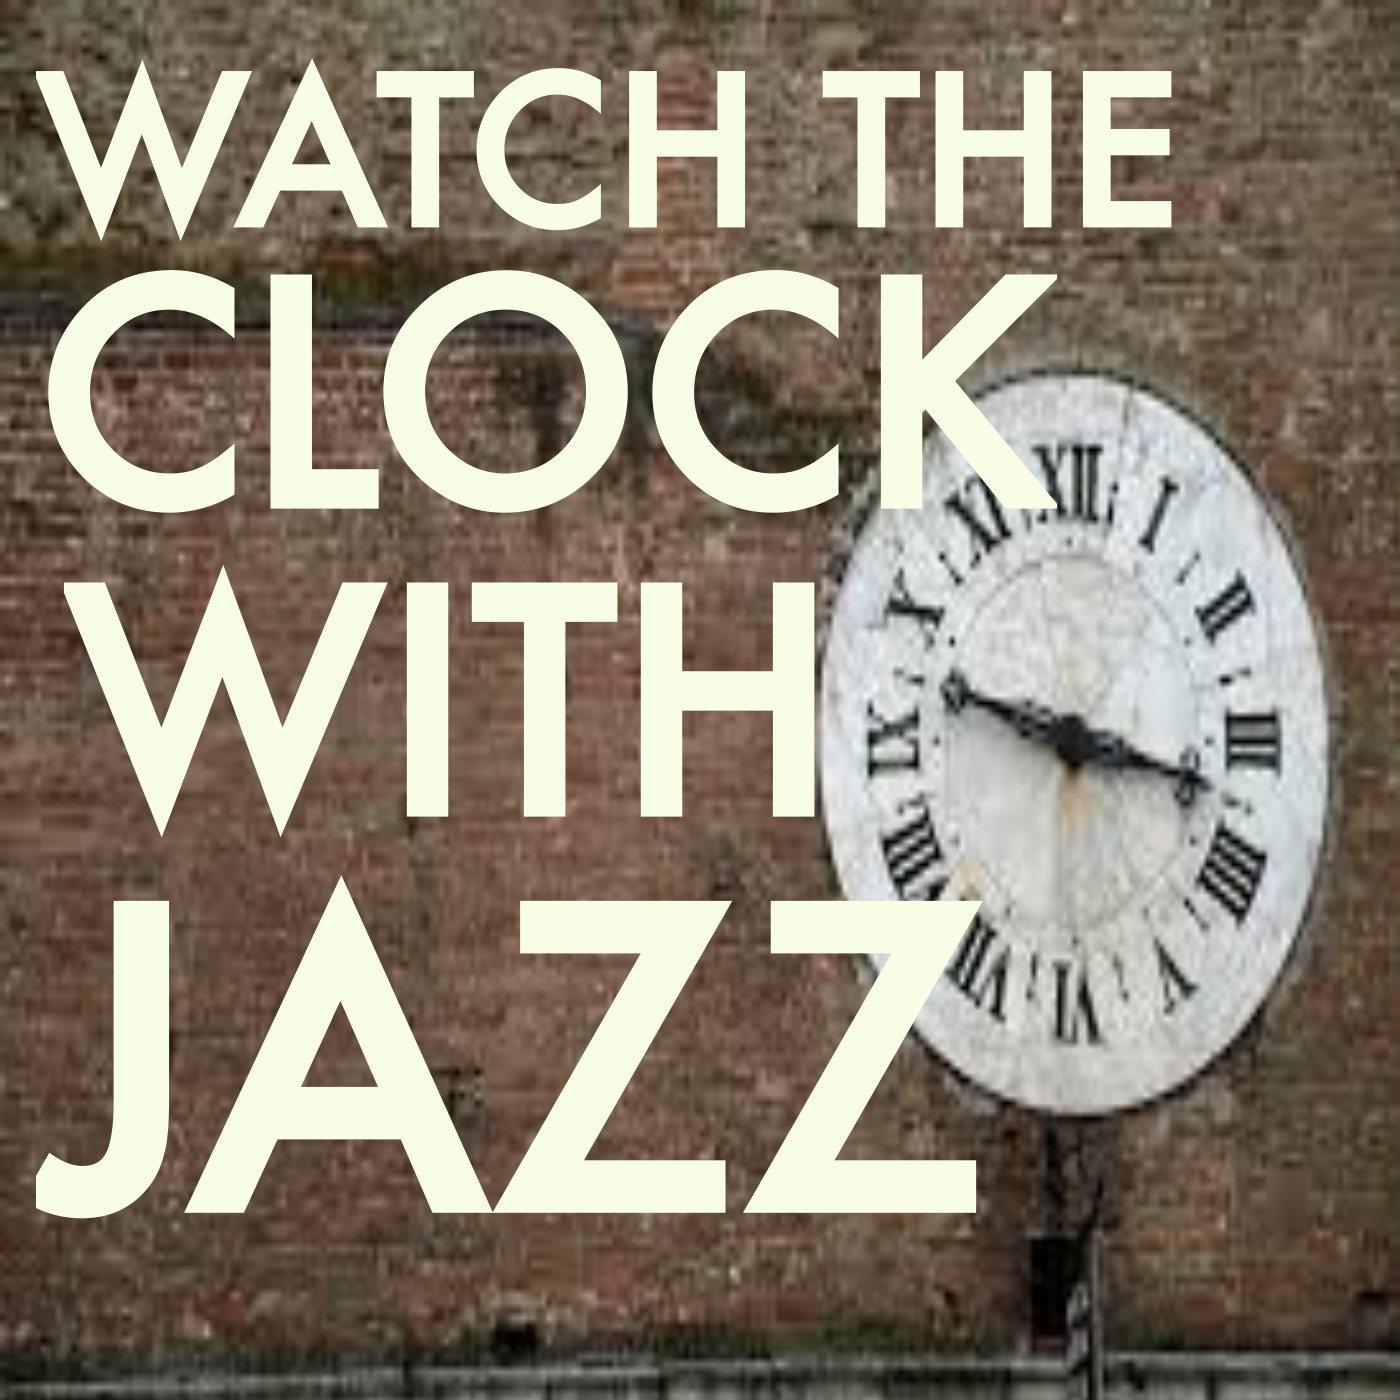 Watching The Clock Jazz